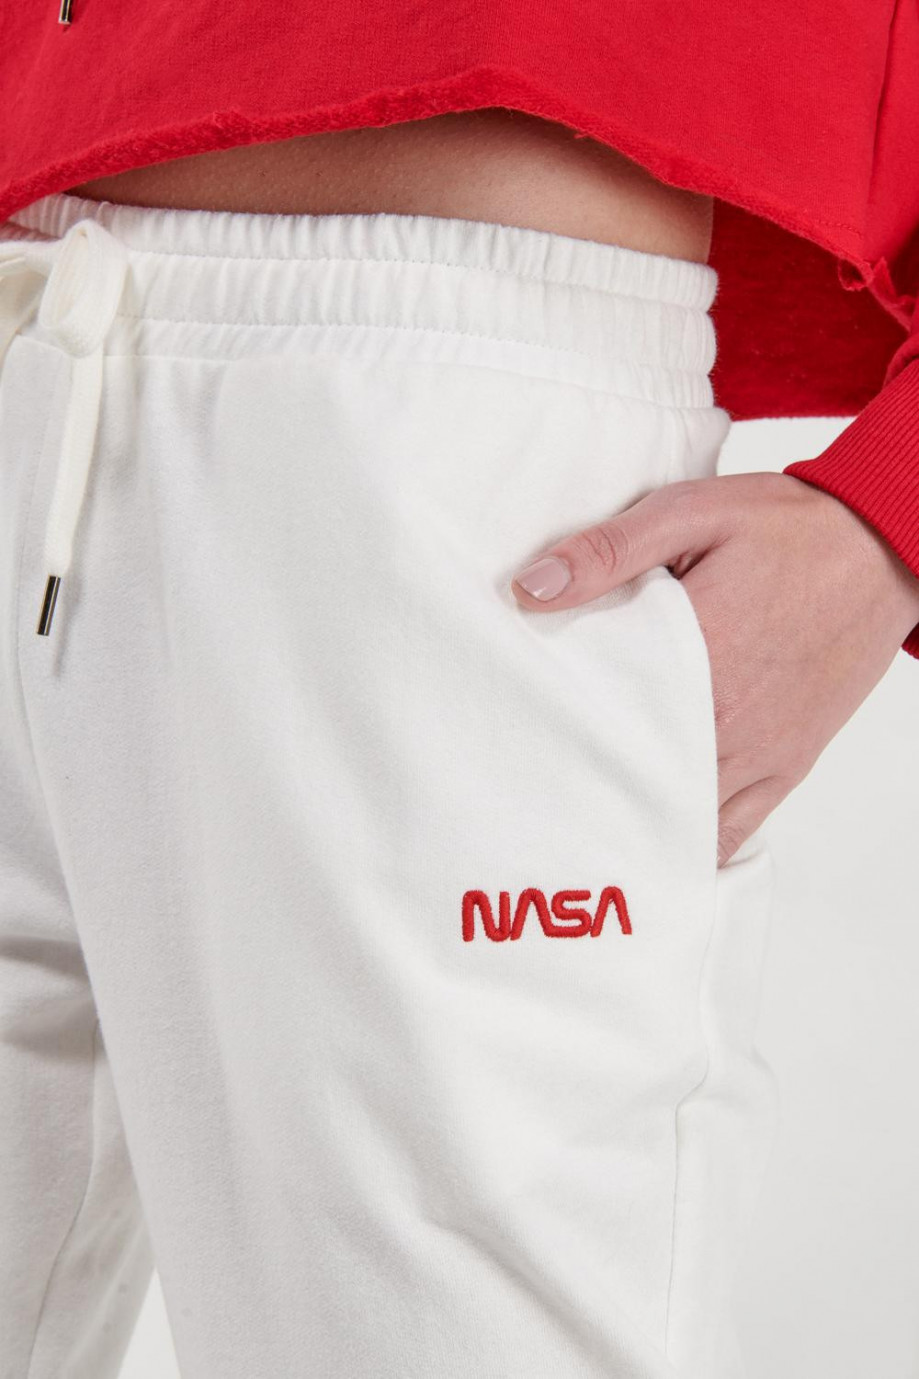 Jogger, bordado en frente de NASA.